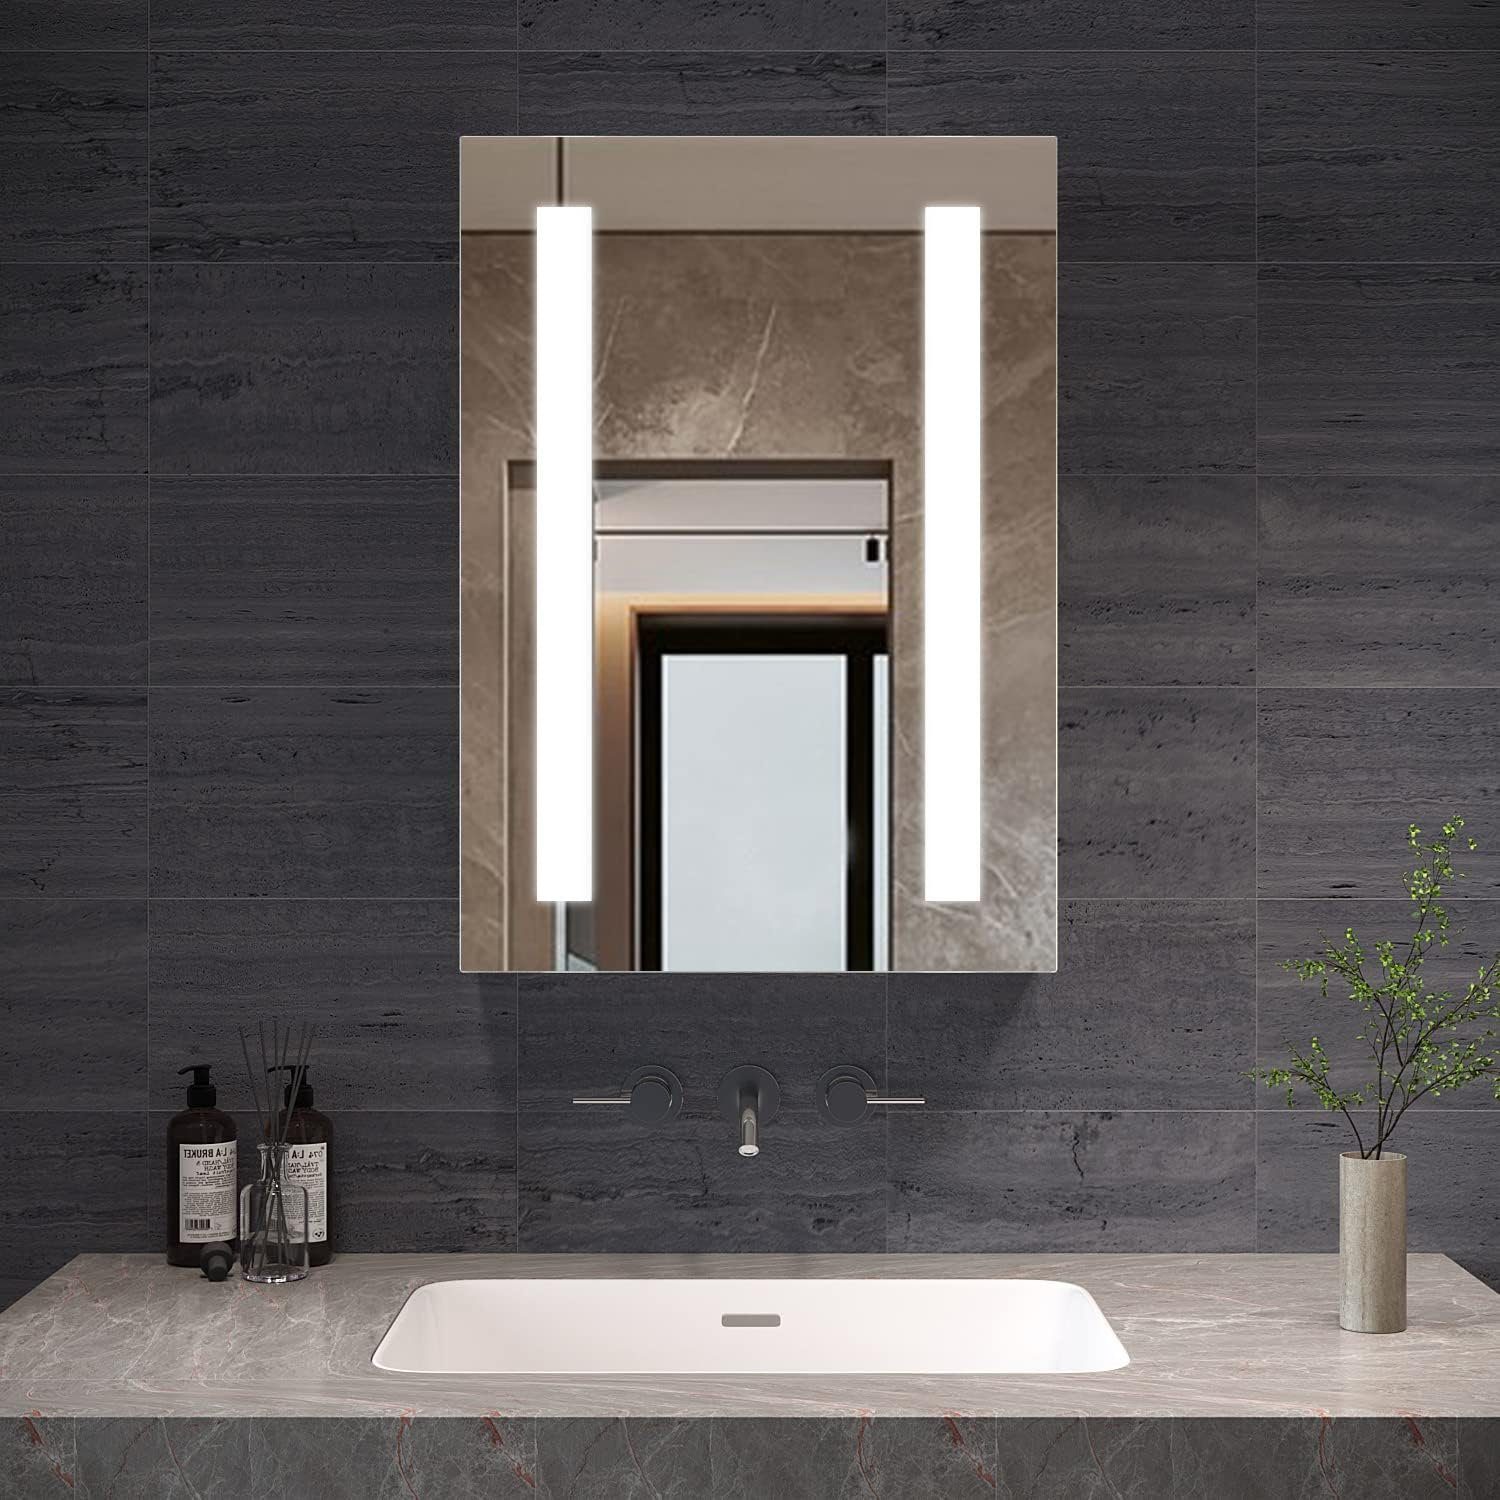 AQUABATOS Badezimmerspiegelschrank Spiegelschrank Bad 50 cm breit mit led Beleuchtung Steckdose